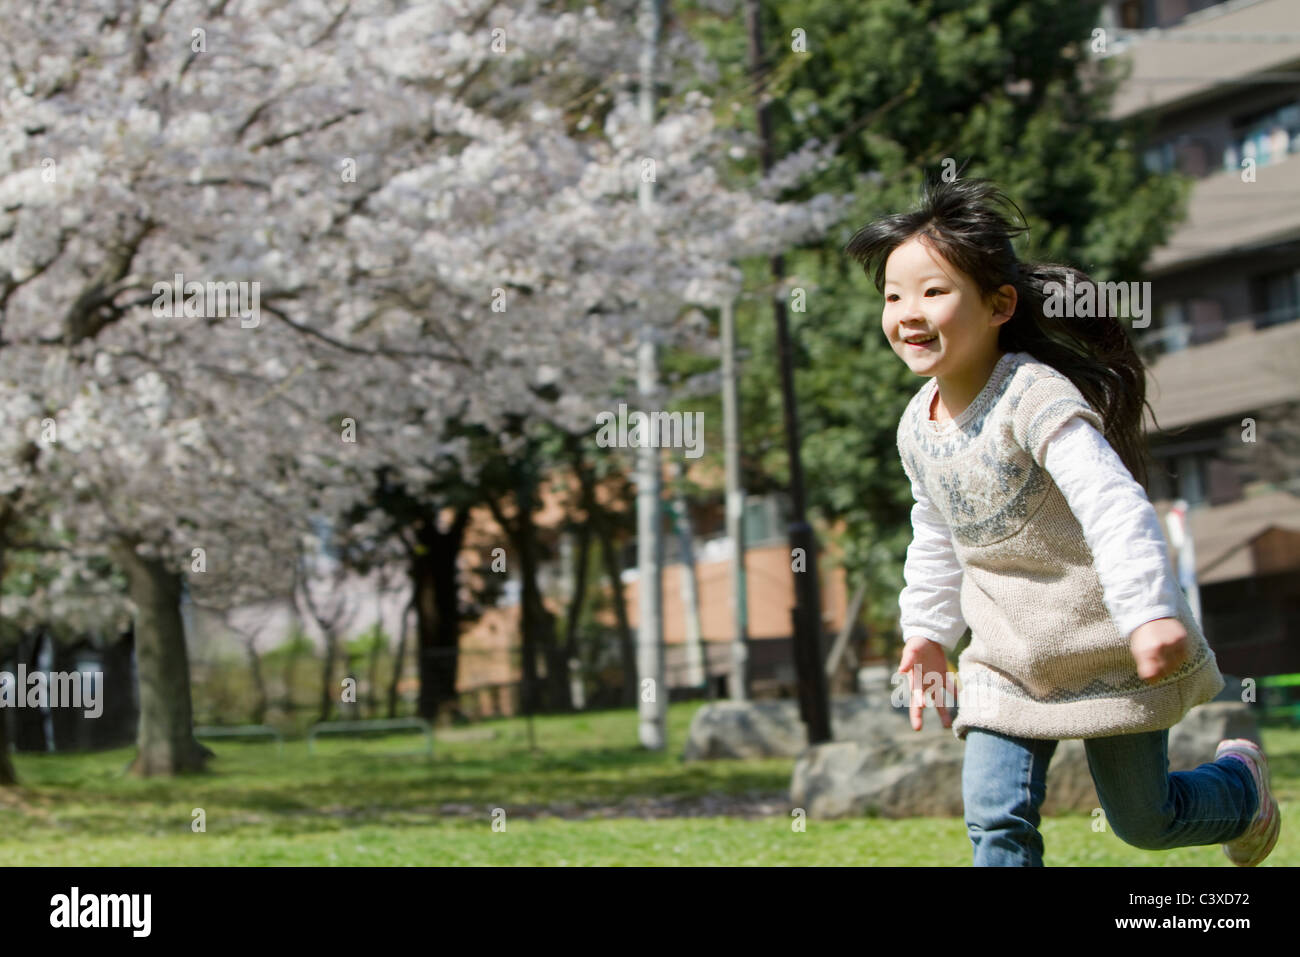 Japanese Girl Running in Park Stock Photo